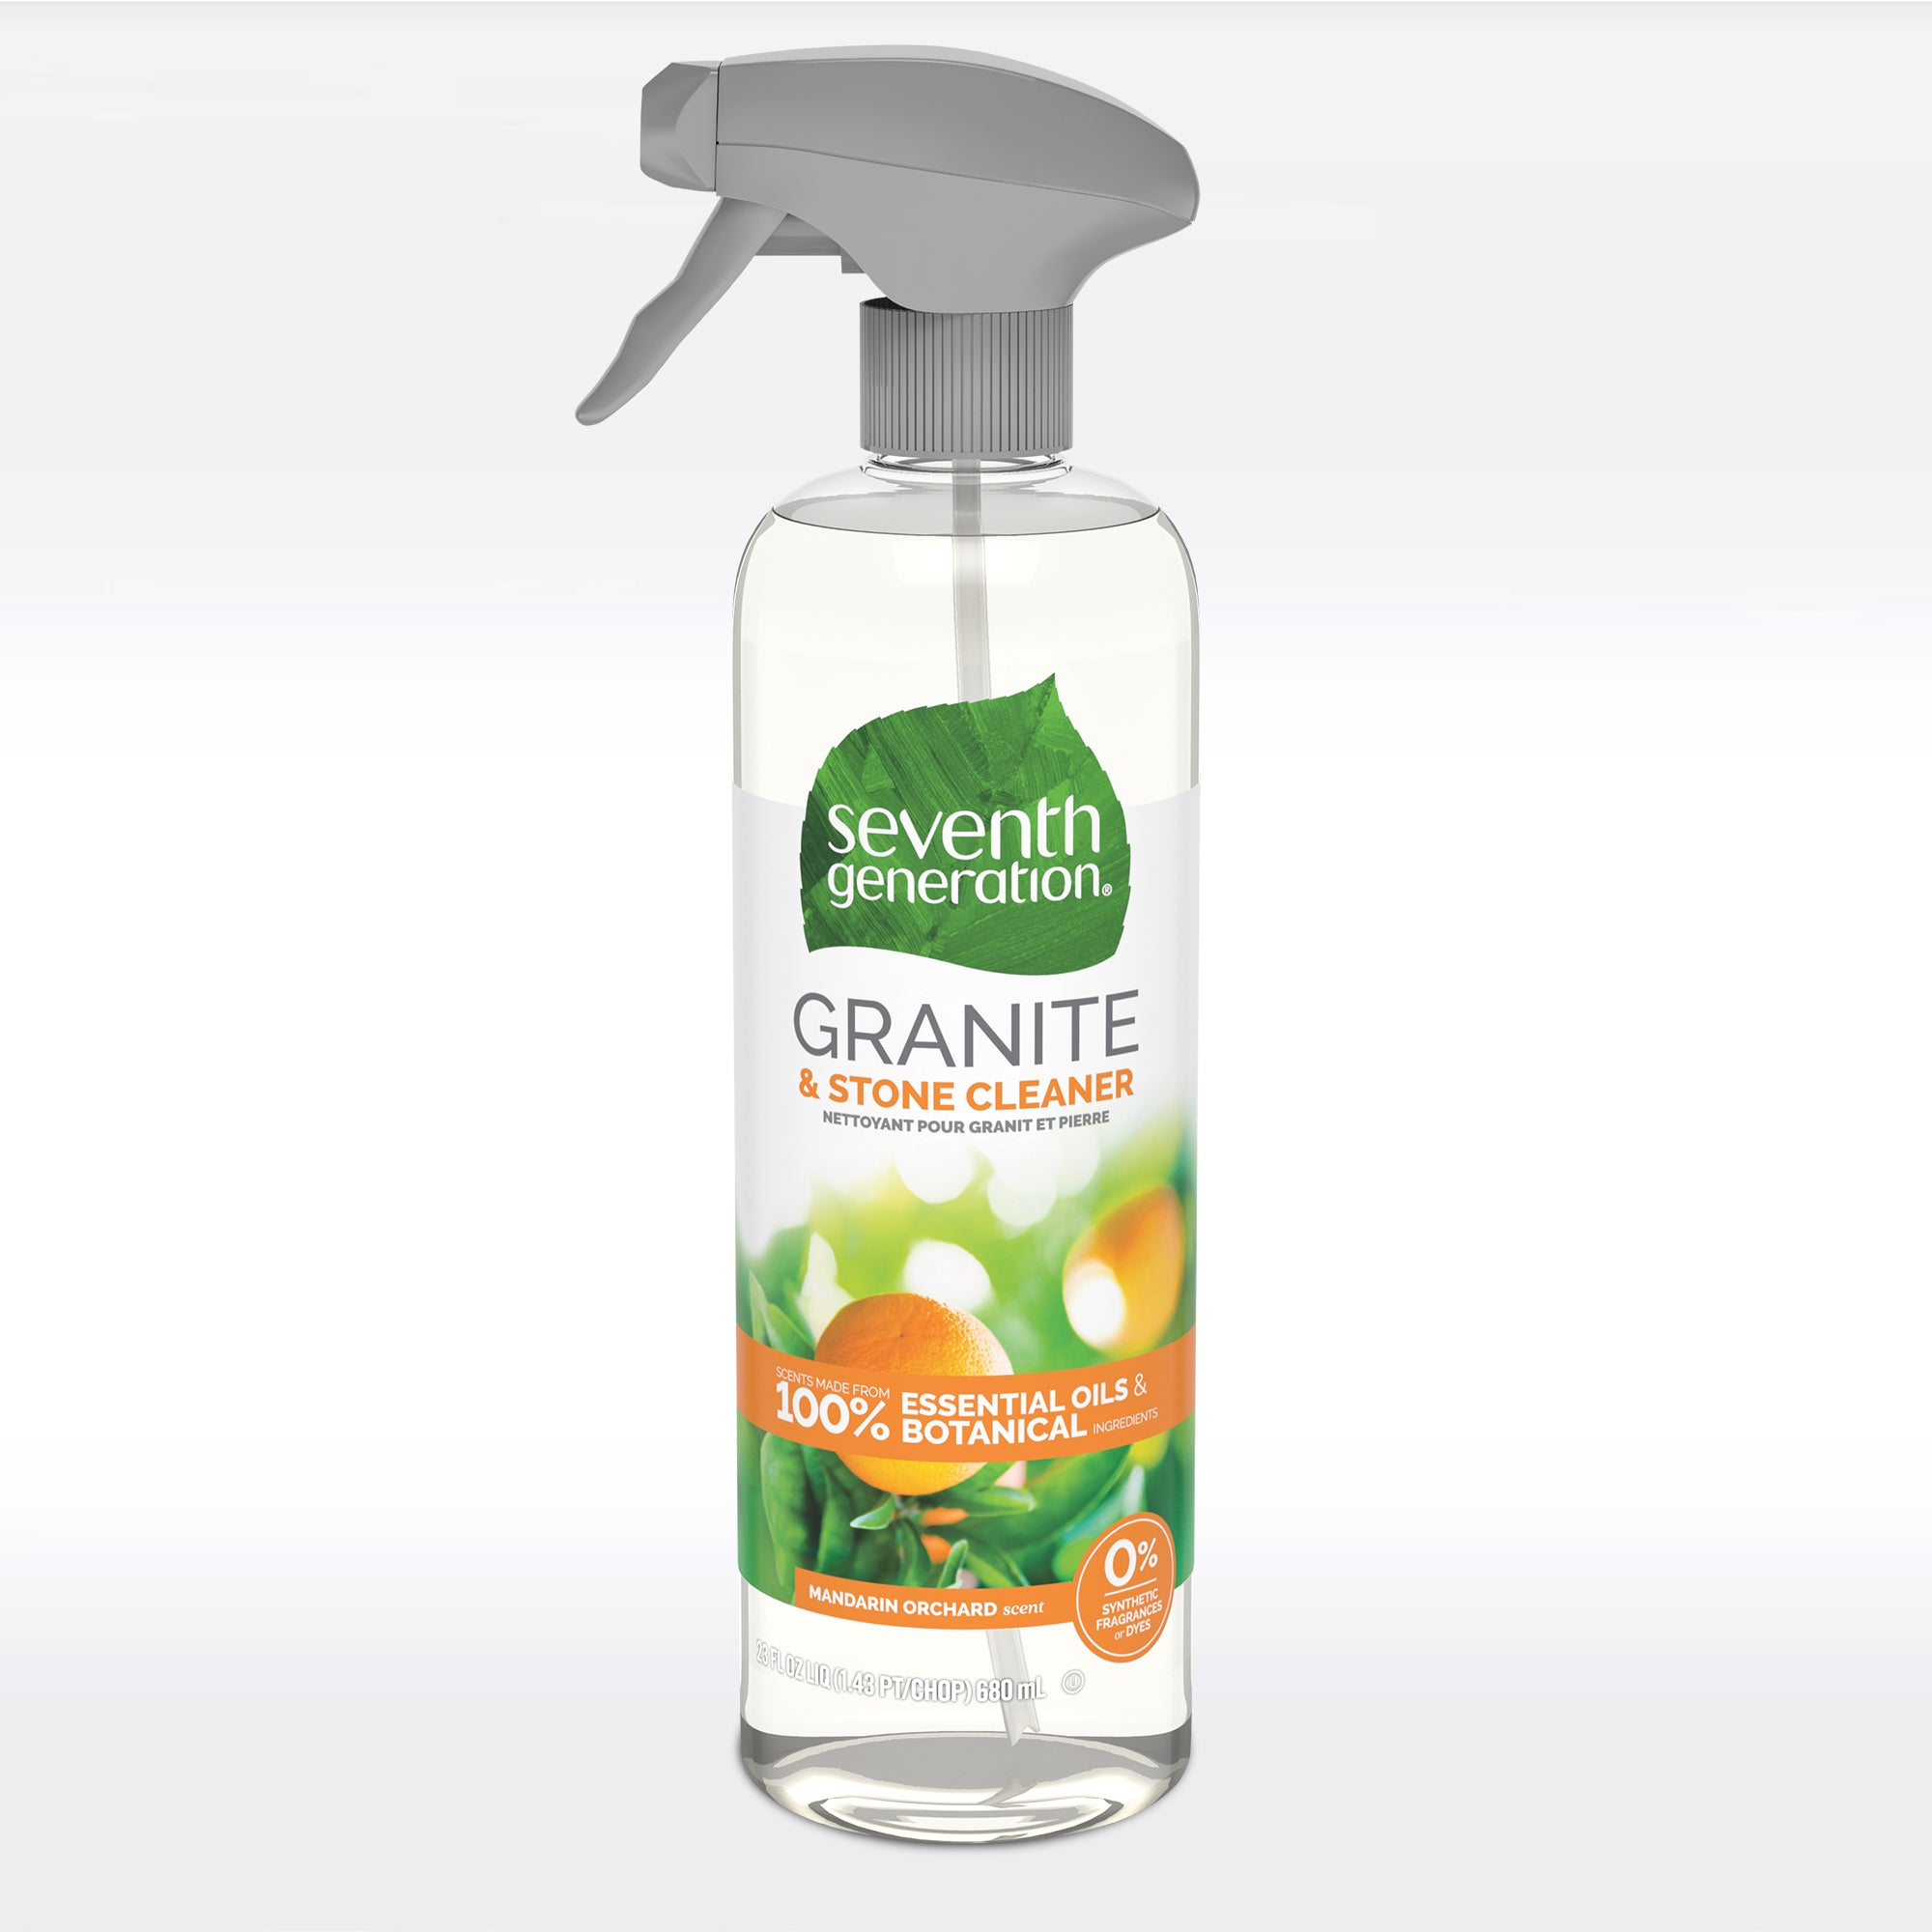 Nettoyant pour granit au parfum de verger de mandarine de septième génération 680 ml